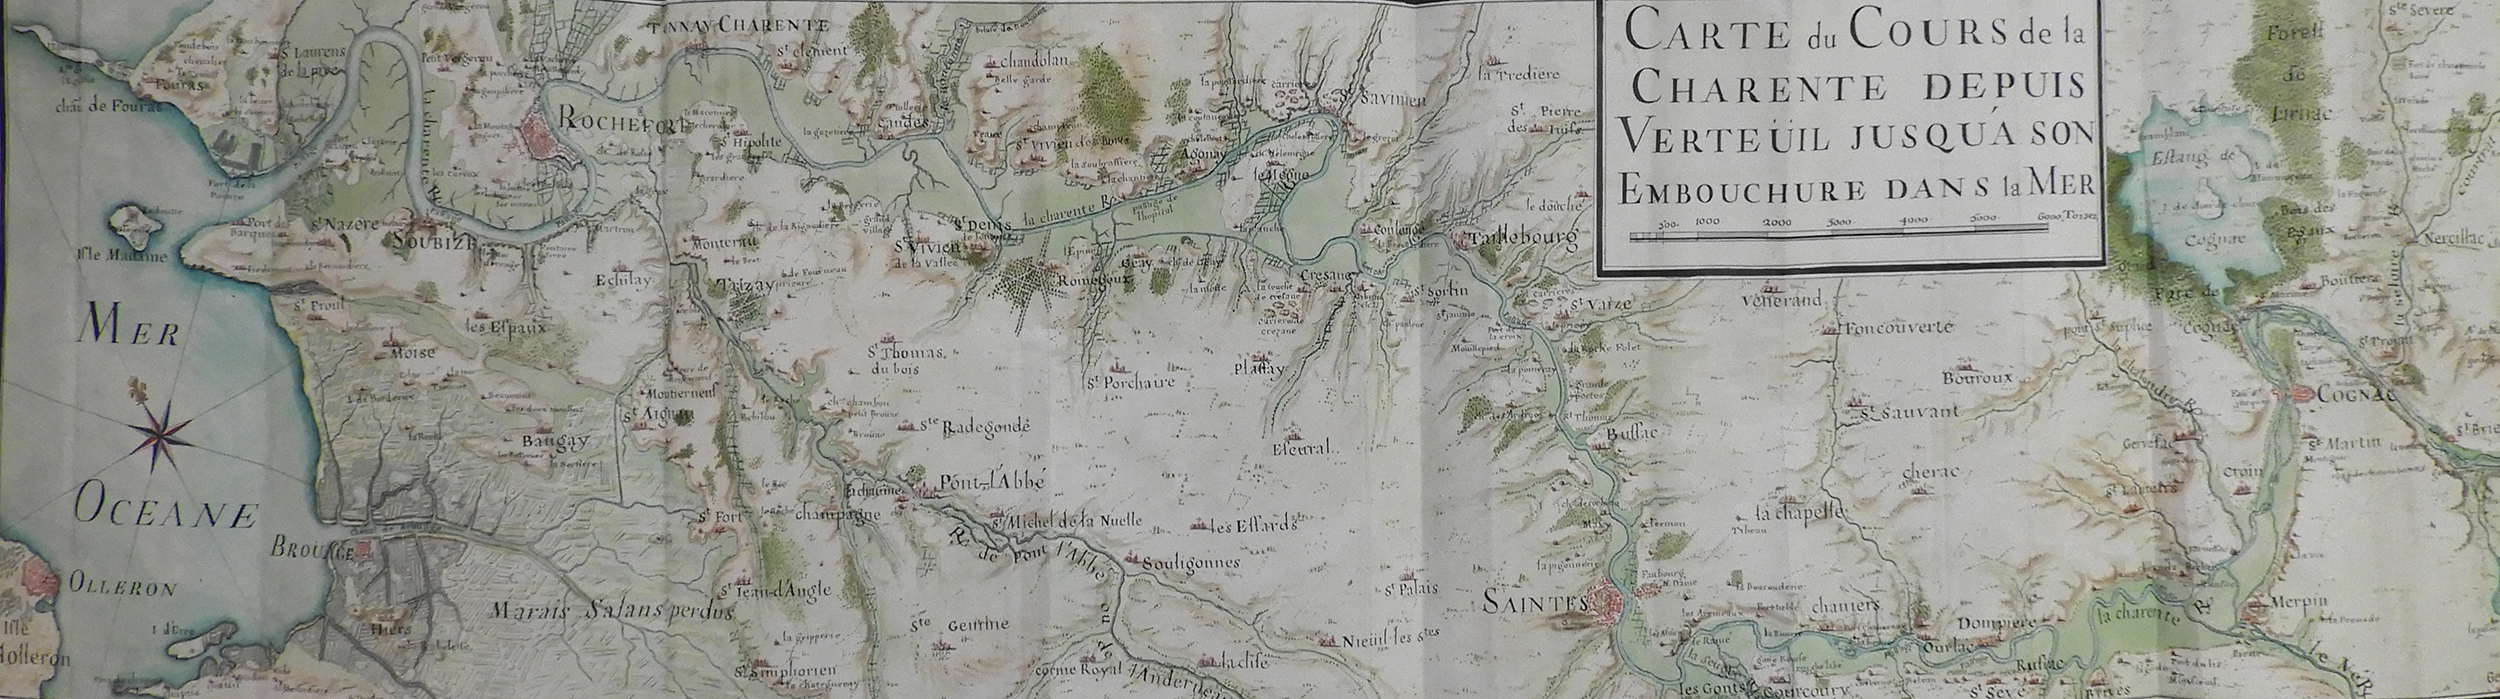 Carte du cours de la Charente depuis Verteuil jusqu'à son embouchure dans la mer, 1689 - 1 VE 47 (c) Service historique de la Défense, Vincennes